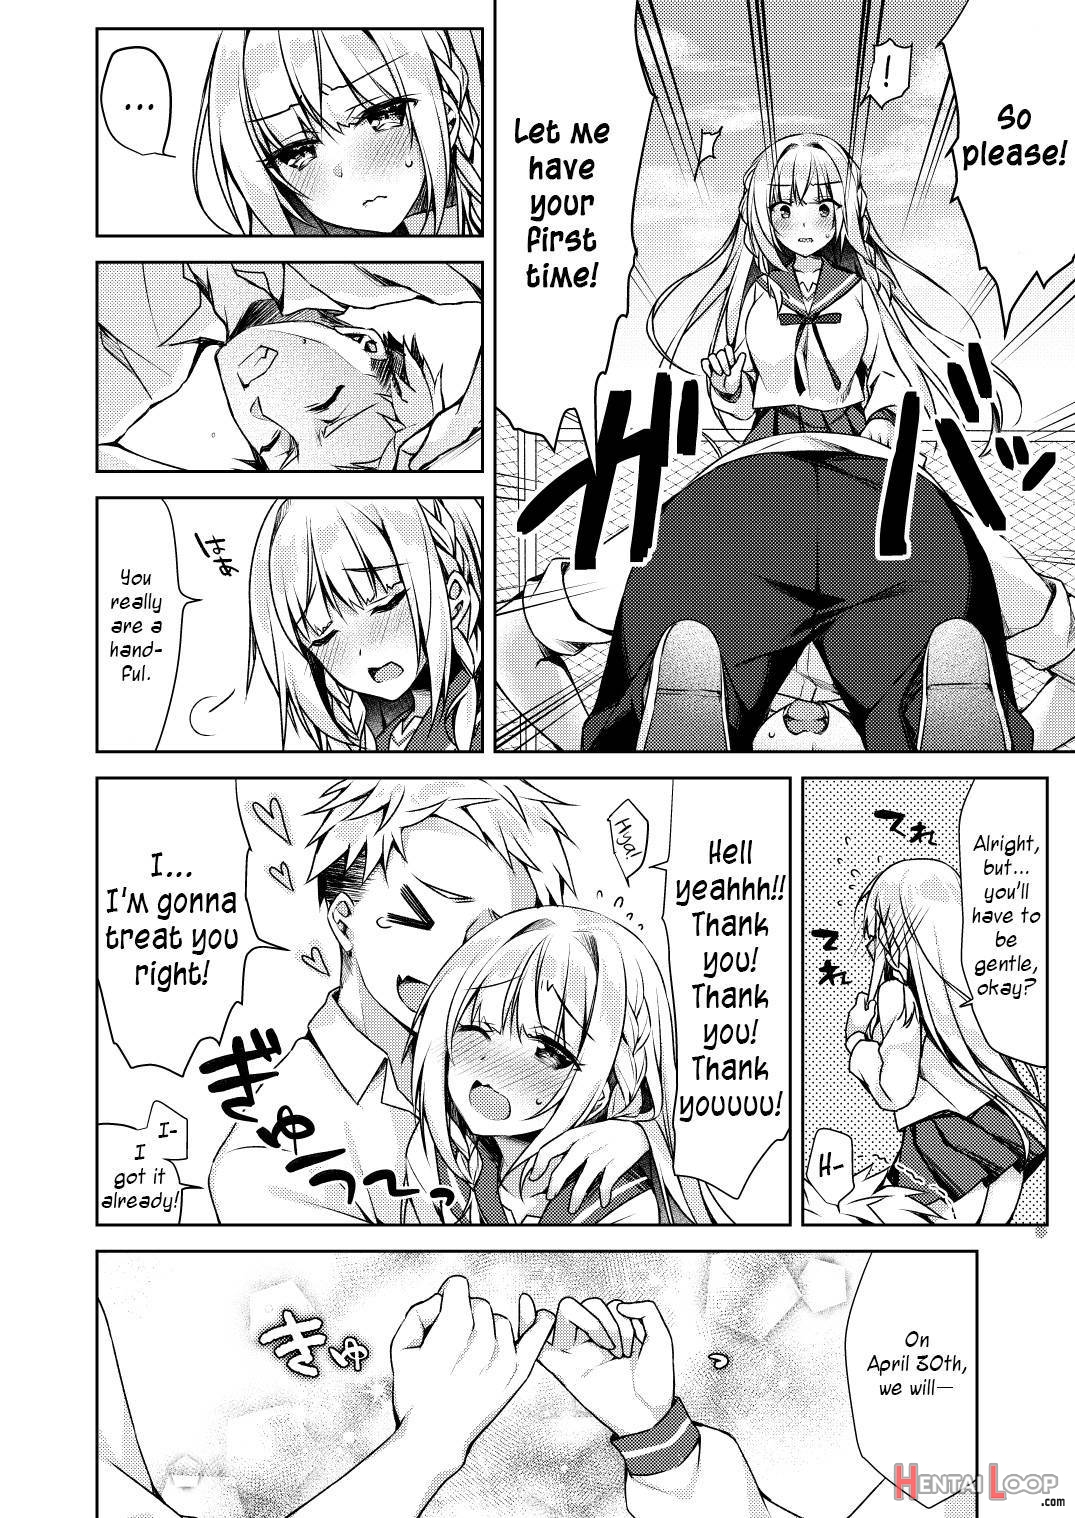 Kaigen ♥ Sex Reiwa-chan page 6